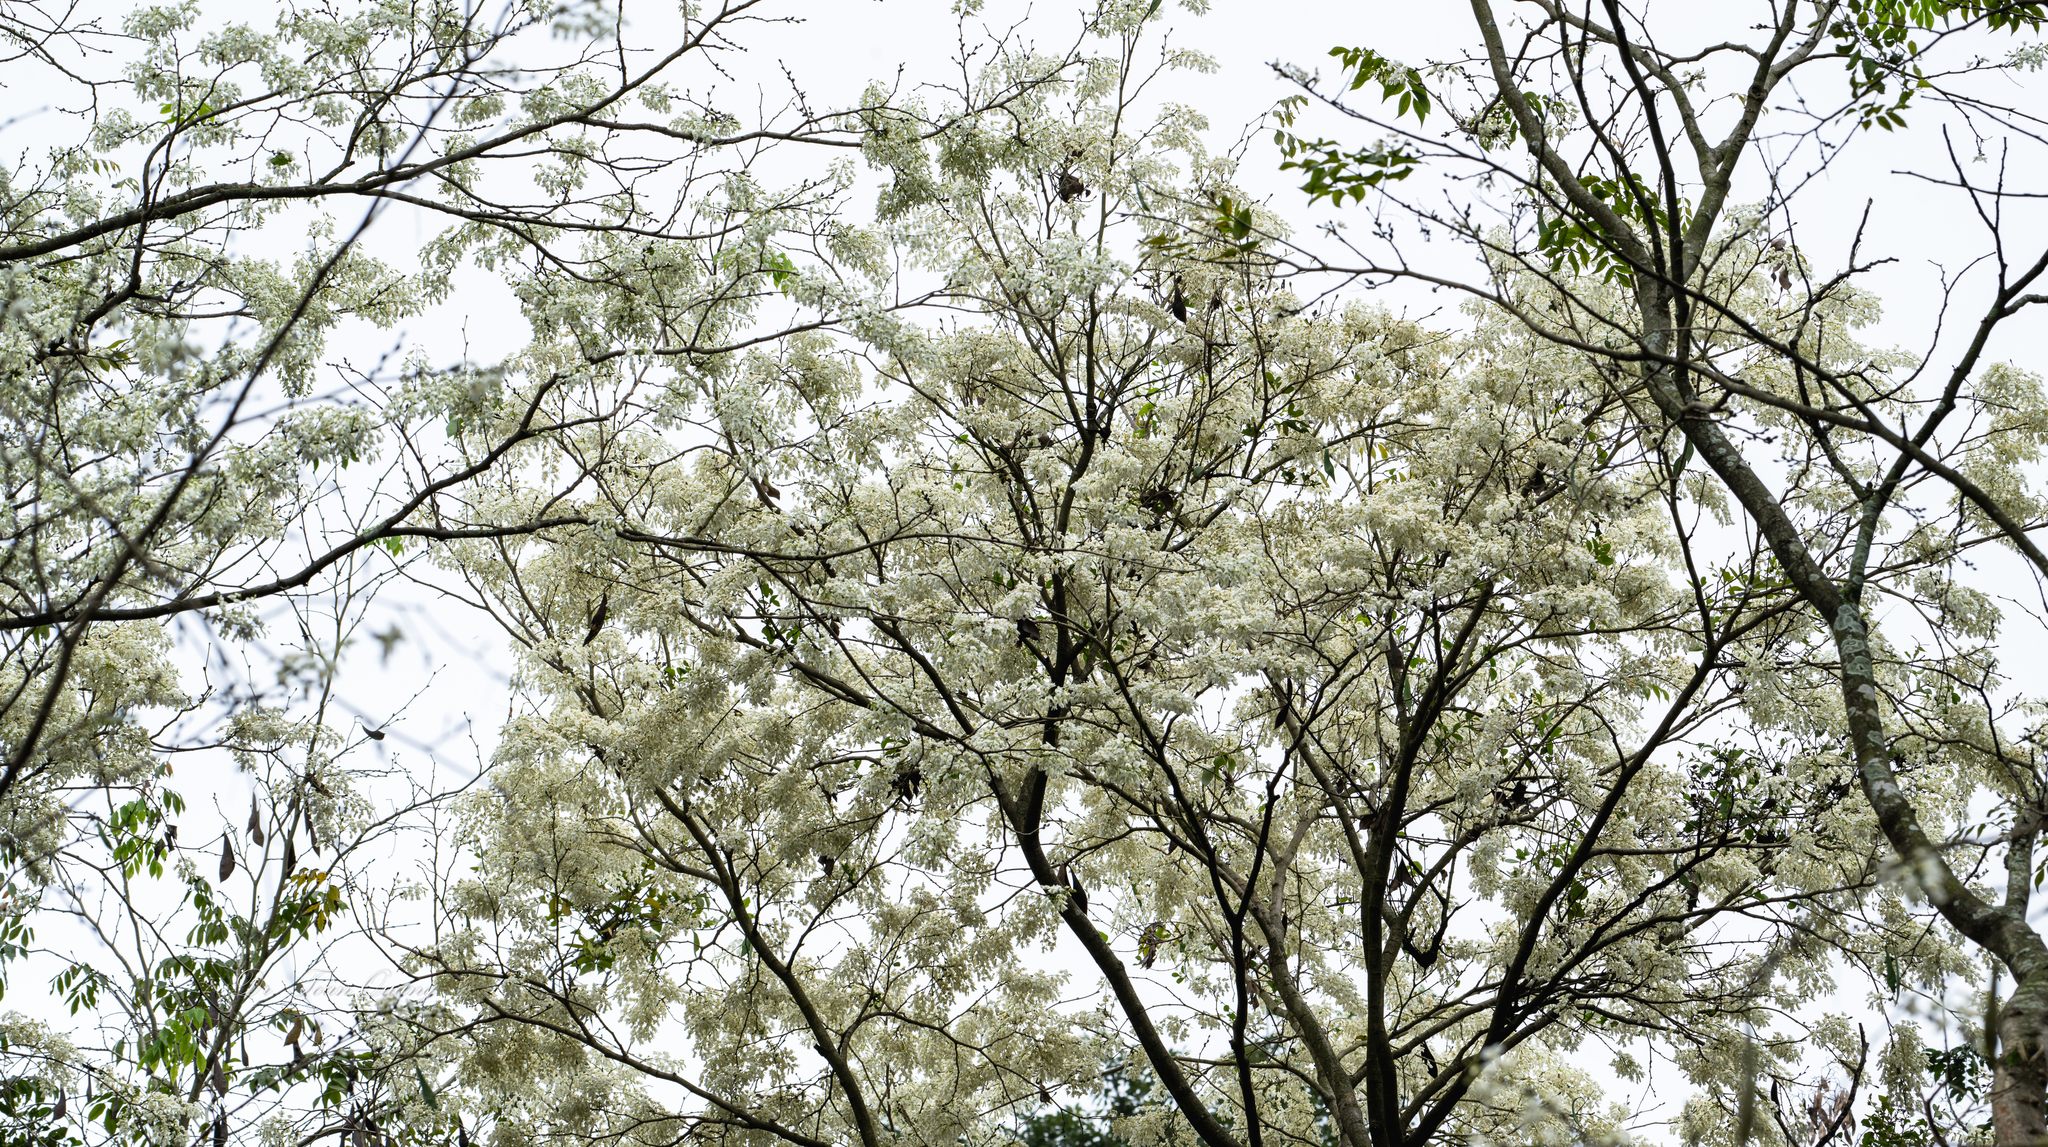 Hoa sưa thường đến âm thầm, khiến nhiều người ngơ ngác khi bất ngờ thấy hoa nở trắng xóa cả một vùng. Mỗi mùa hoa chỉ kéo dài 2 - 3 tuần. Khi hoa rụng xuống, những cánh hoa mỏng manh vẫn giữ nguyên một màu trắng như ngọc, nhường chỗ cho những vòm lá màu xanh non mơn mởn. Ảnh: Toàn Quang